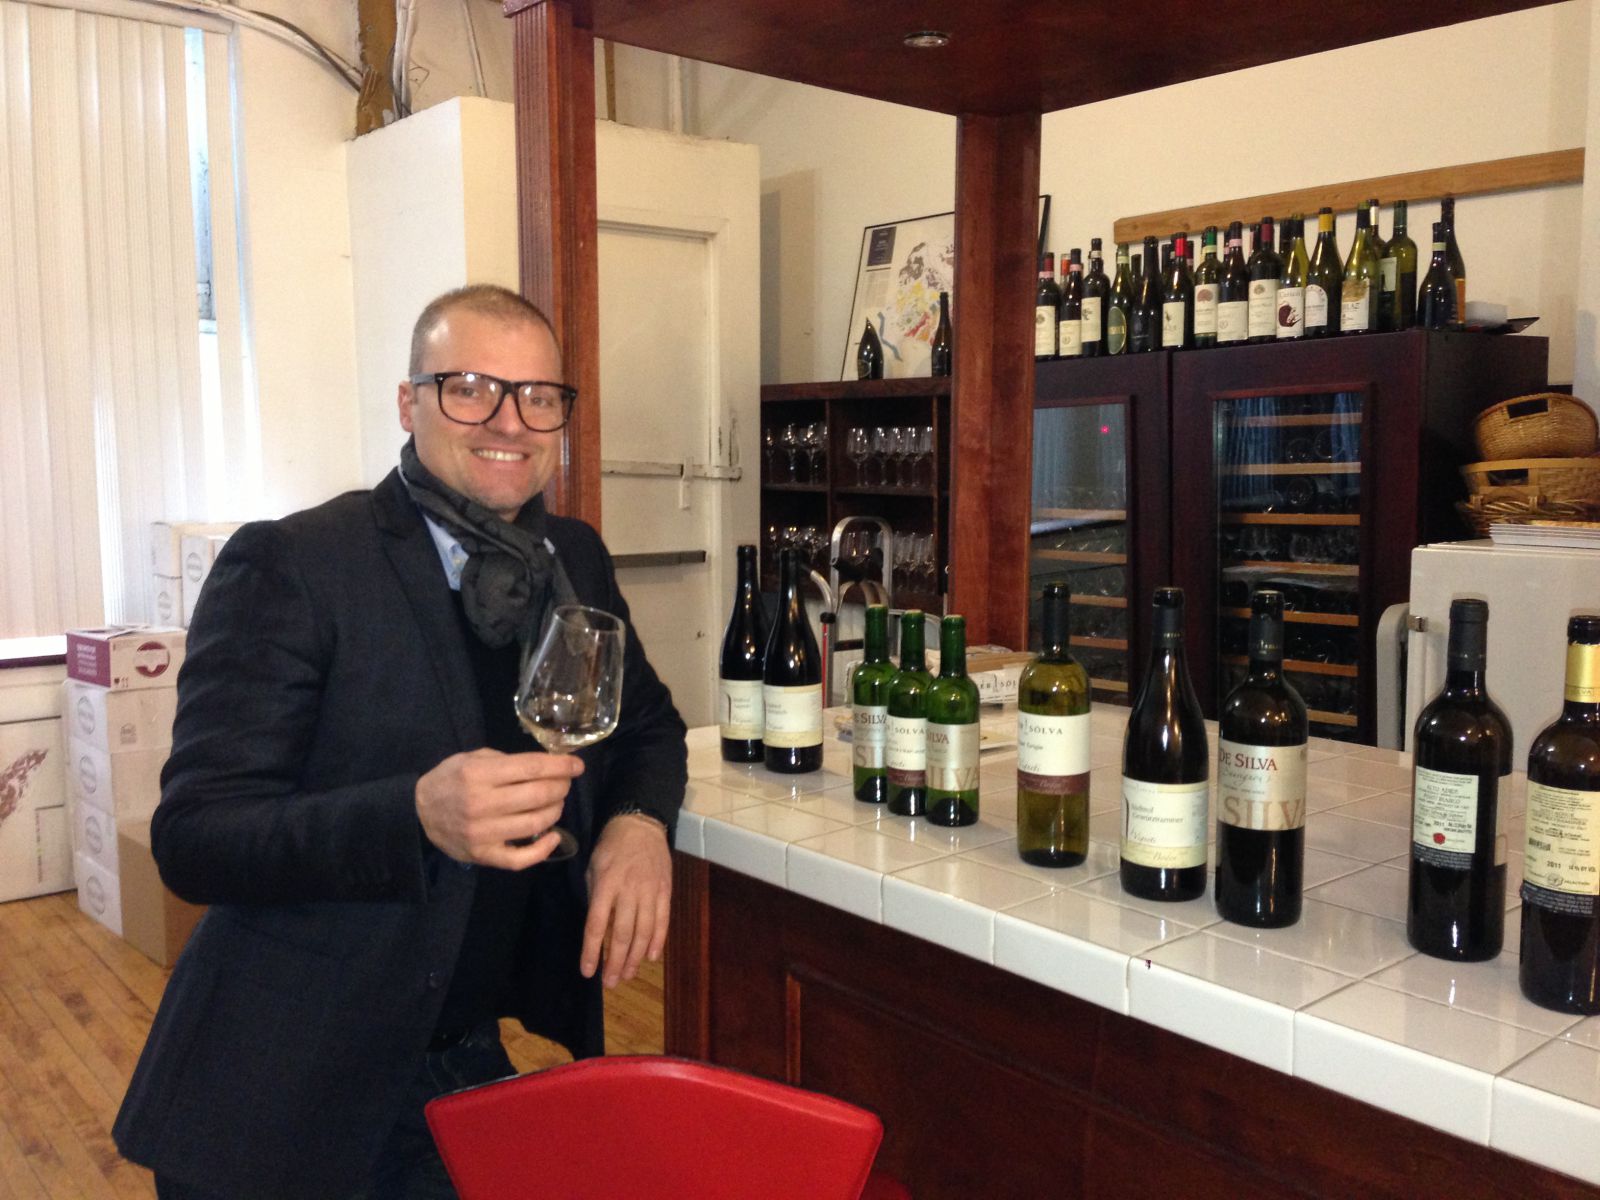 Stephan Soelva owner of Peter Soelva winery at Vignaioli Office